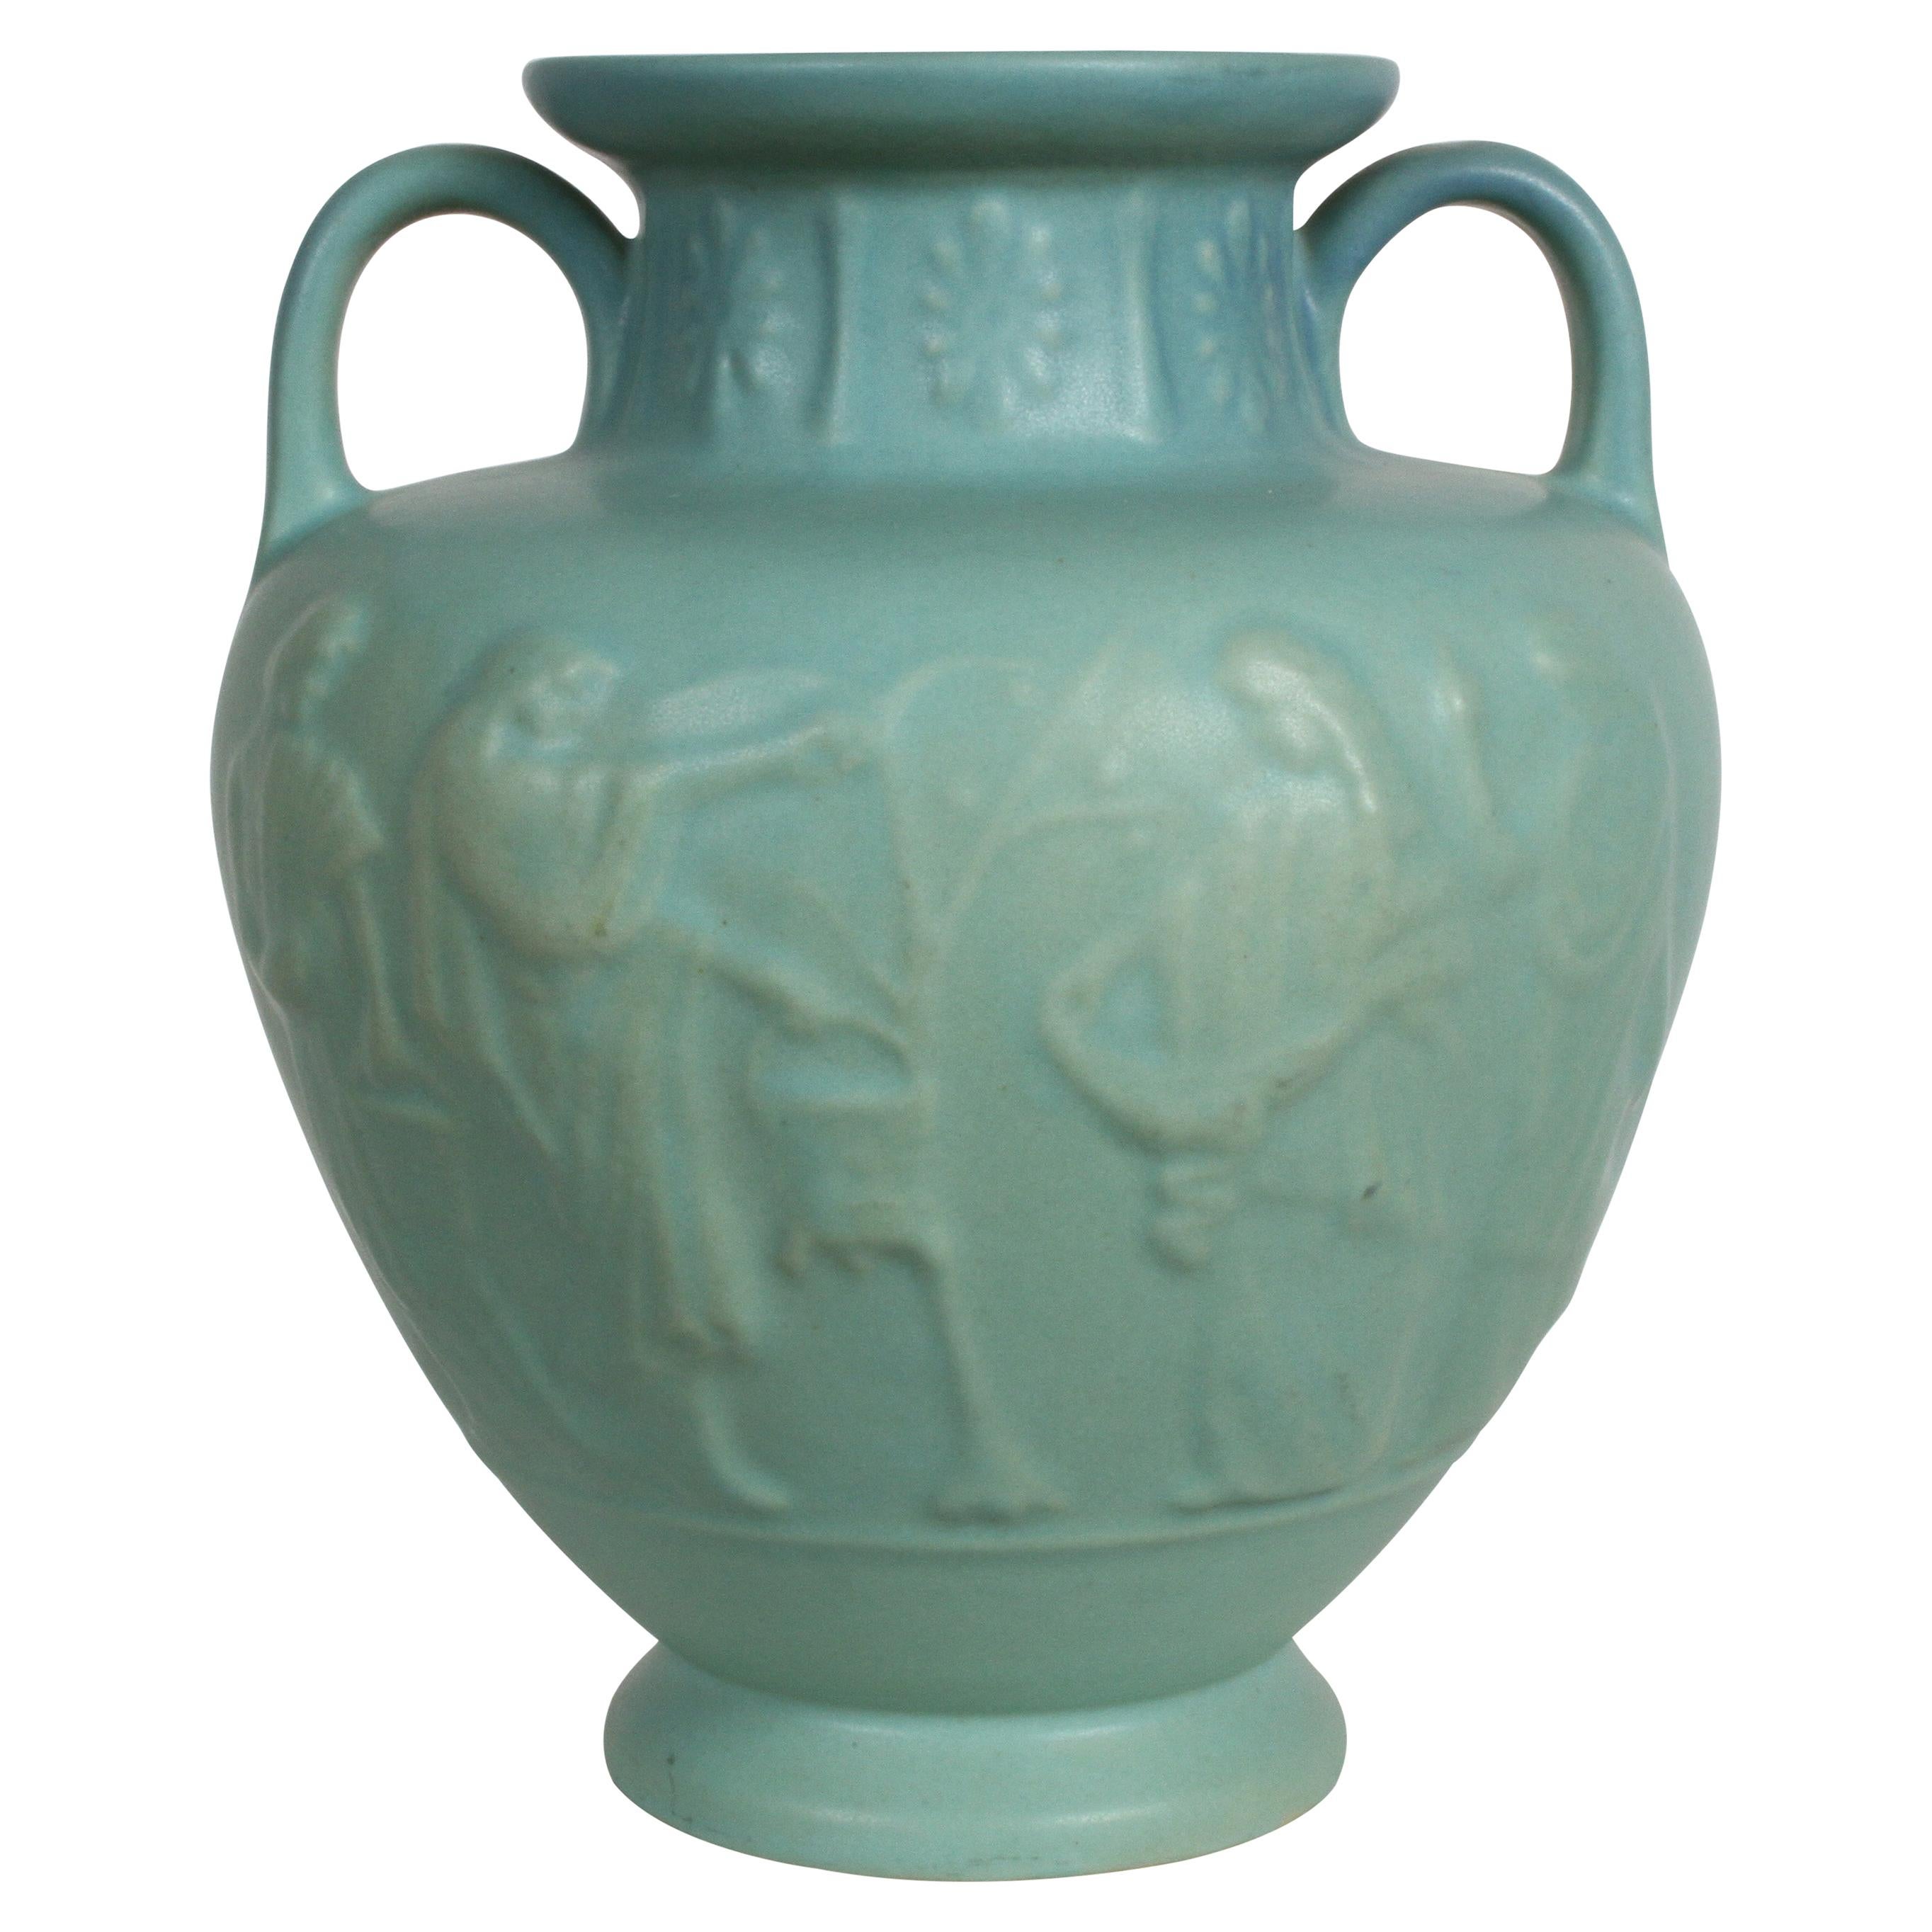 Van Briggle Turquoise Ming Glaze Grecian Urn or Vase Signed D.R.